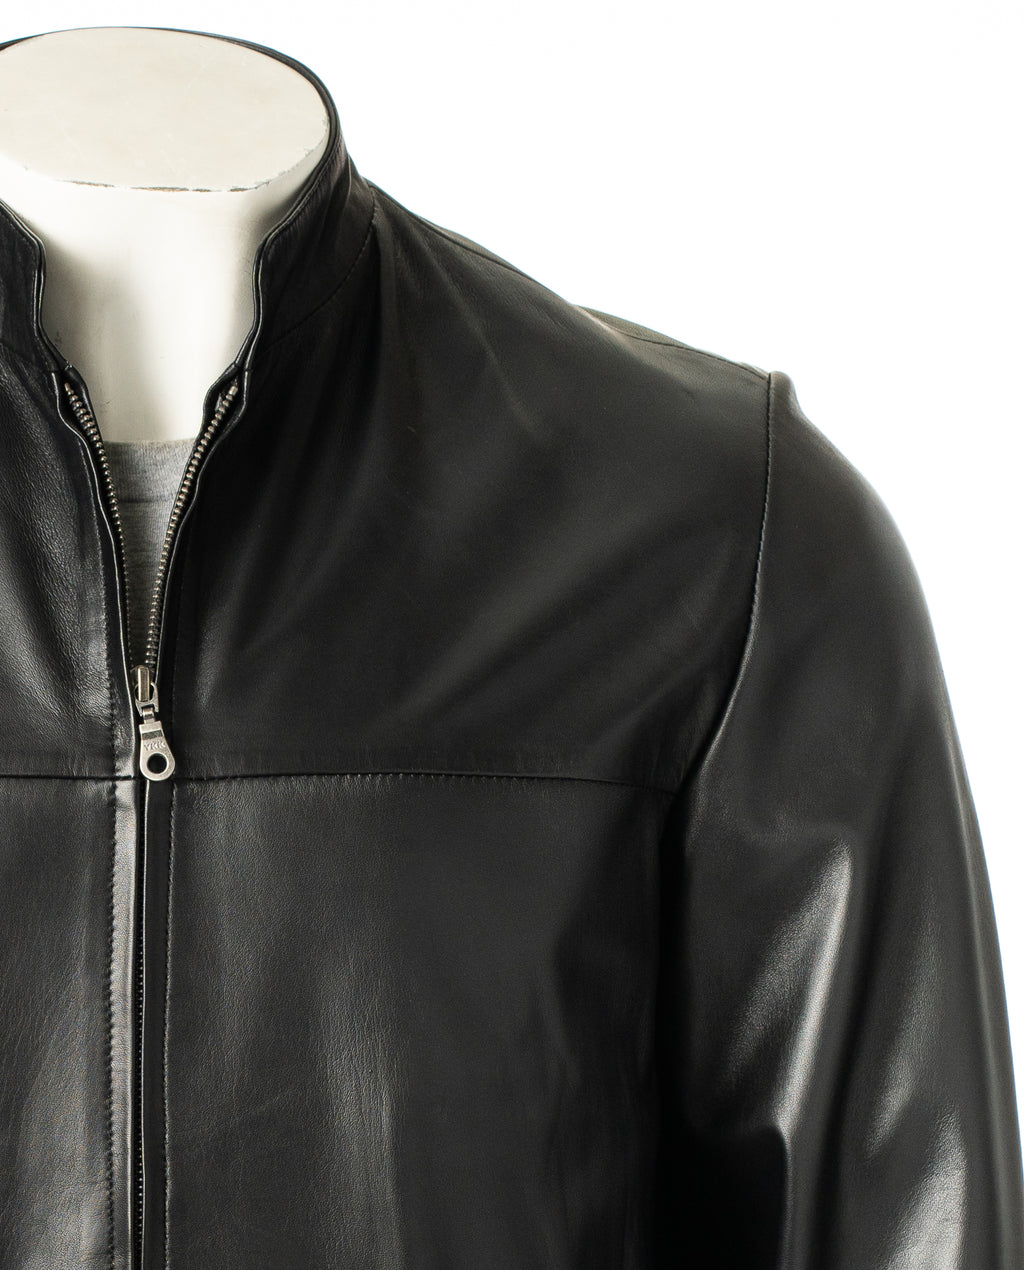 Men's Black Simple Leather Jacket: Davide